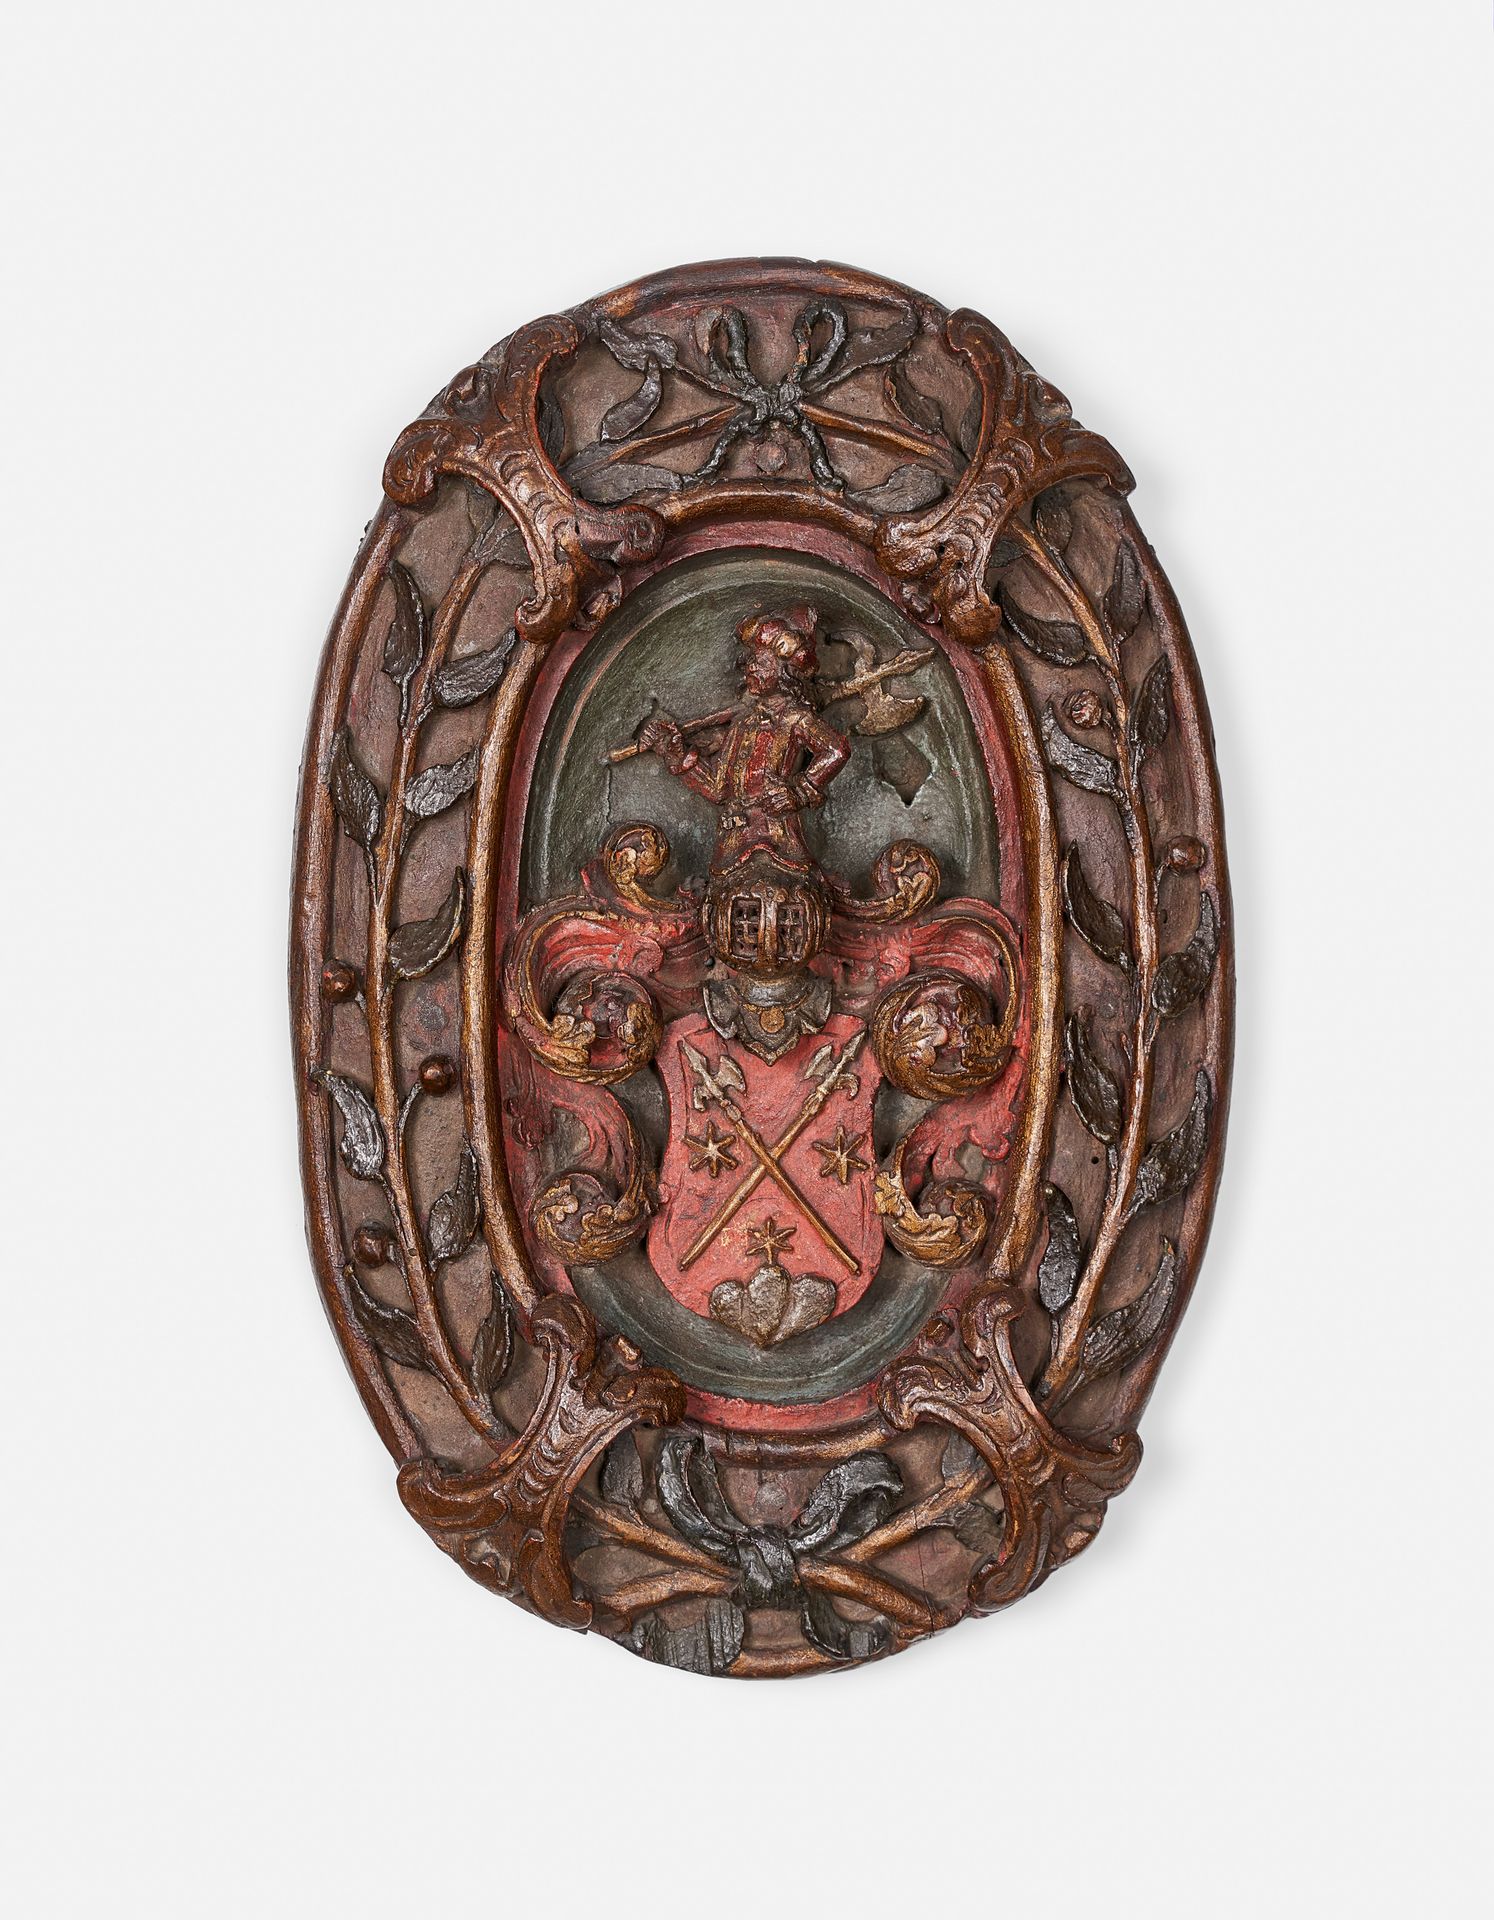 Null 雕刻的盾牌

16世纪末

木雕的高浮雕，中央的奖牌_x0002_狮子，有盾牌，头顶的头盔和一个手持戟的摩尔人，周围有橄榄树枝。

高：29 x 宽：&hellip;